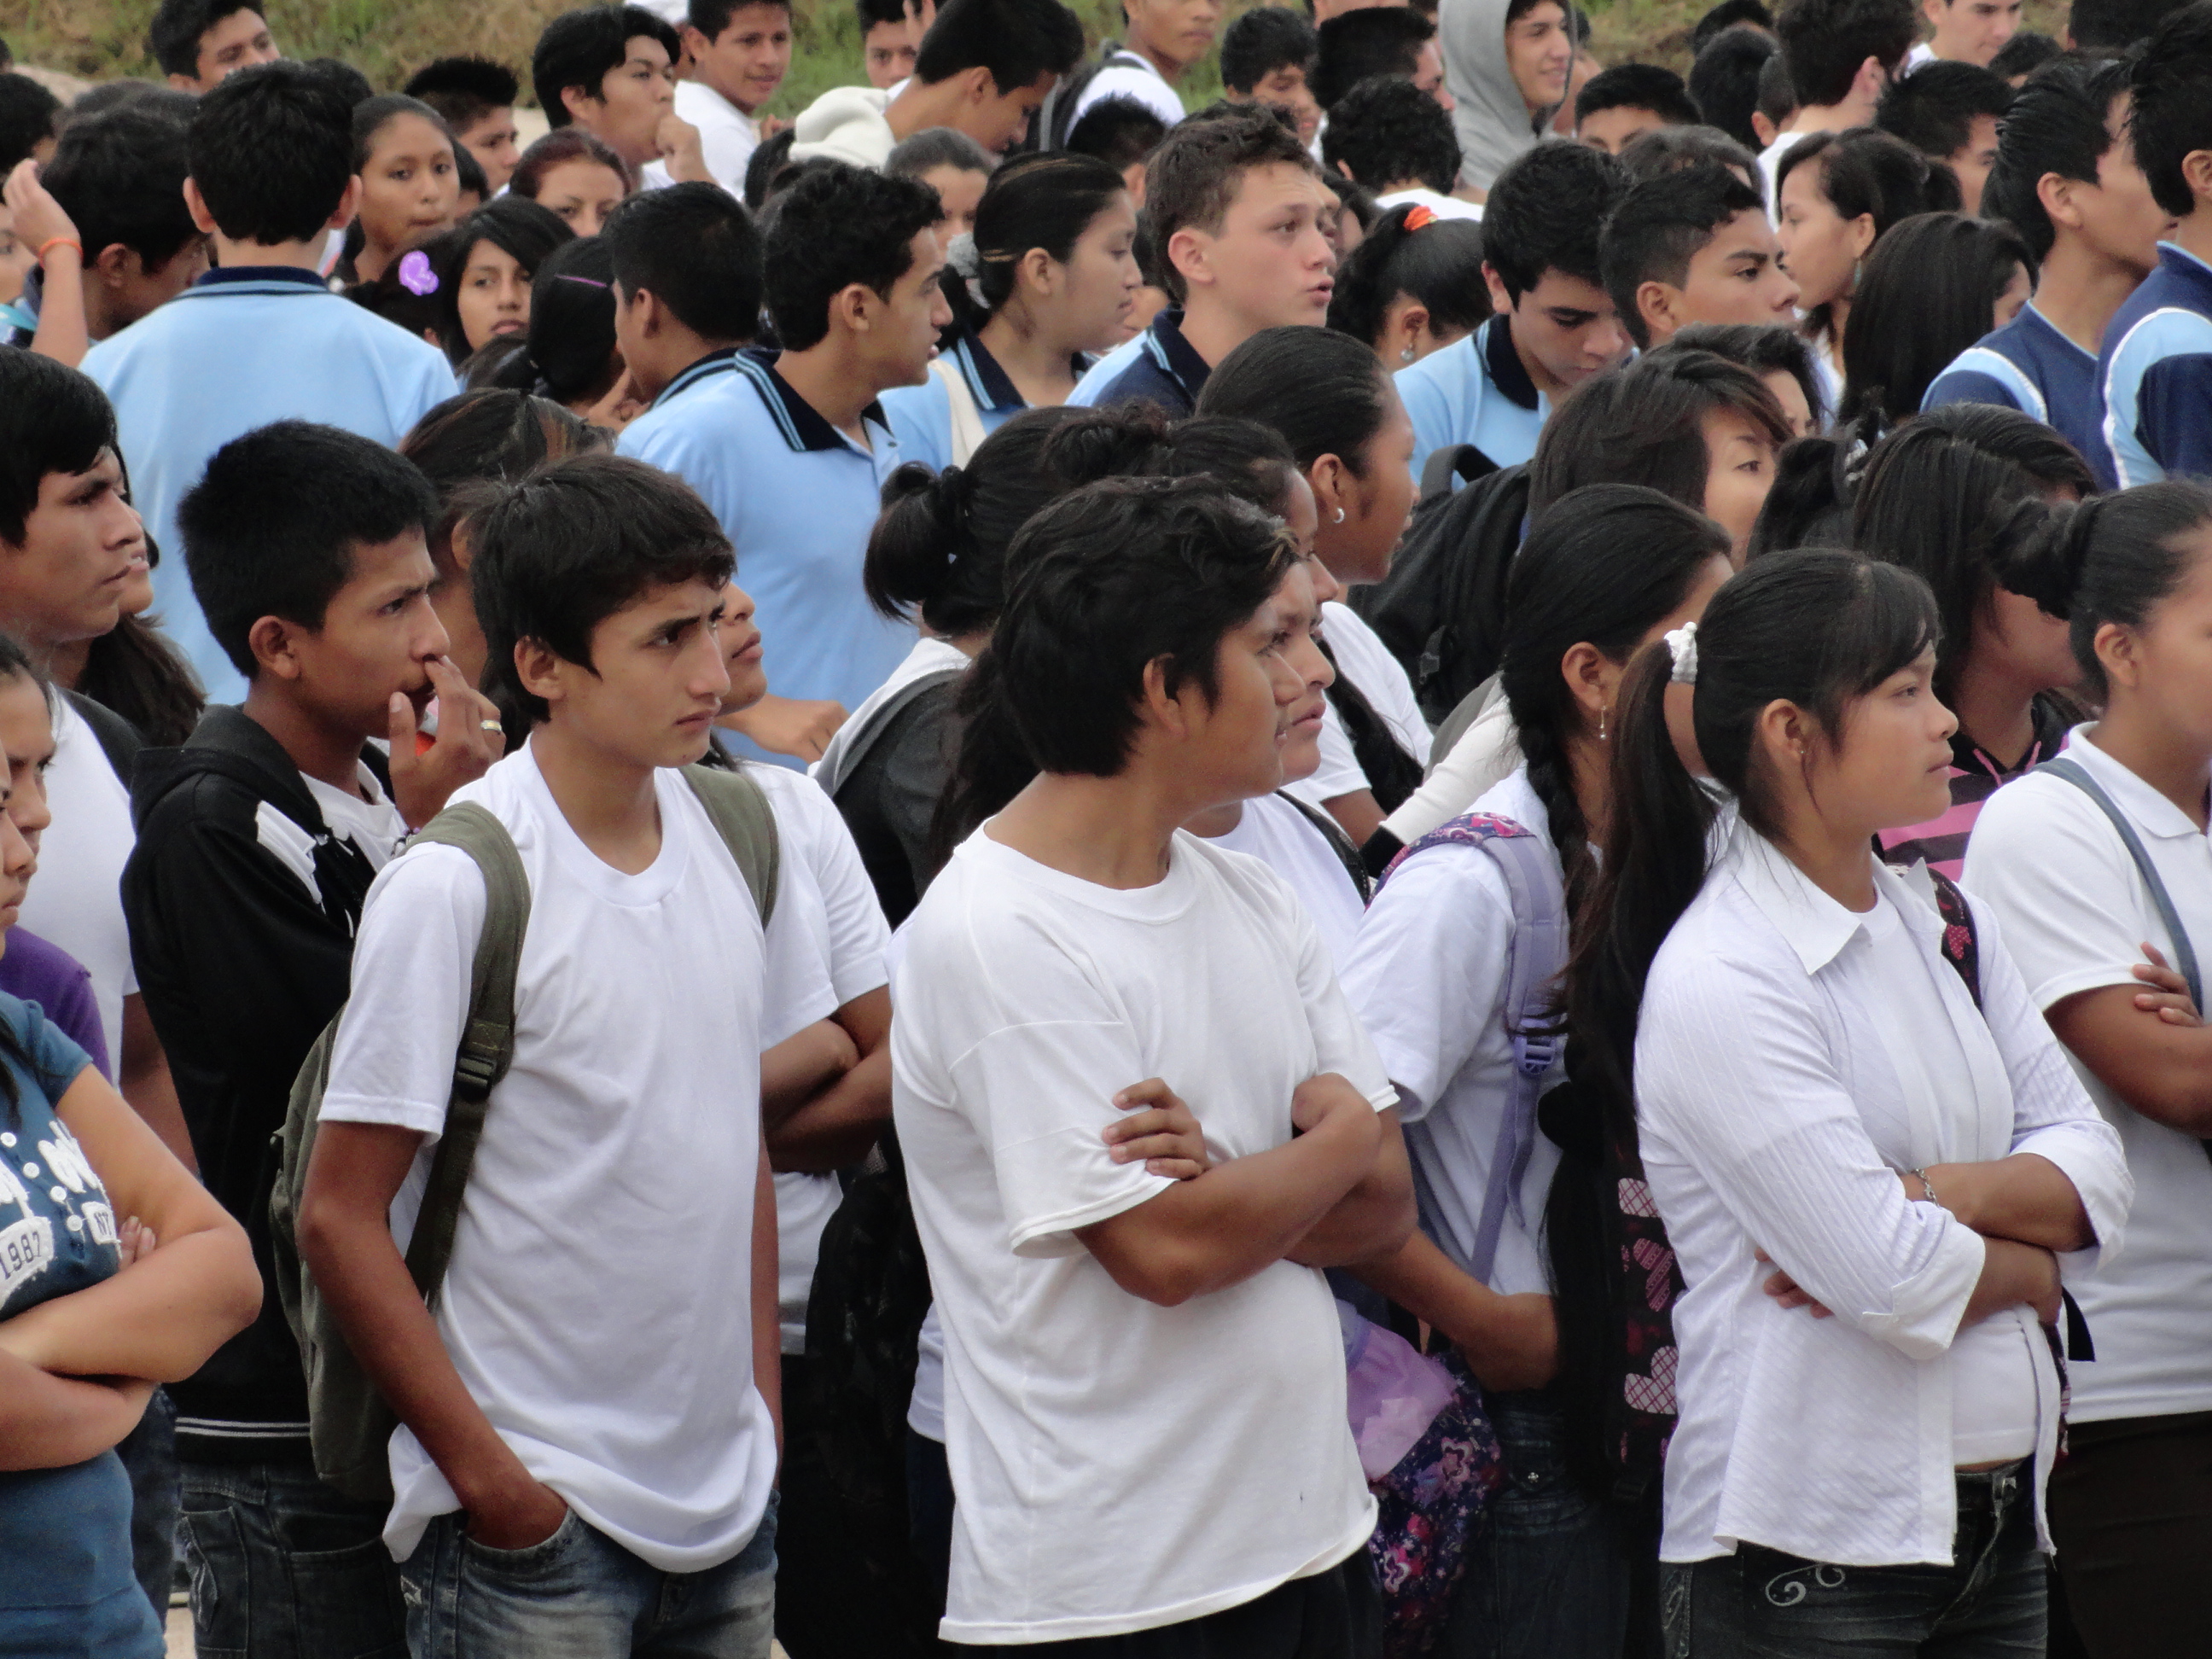 Foto: Jovenes de toda la provincia - Puyo (Pastaza), Ecuador